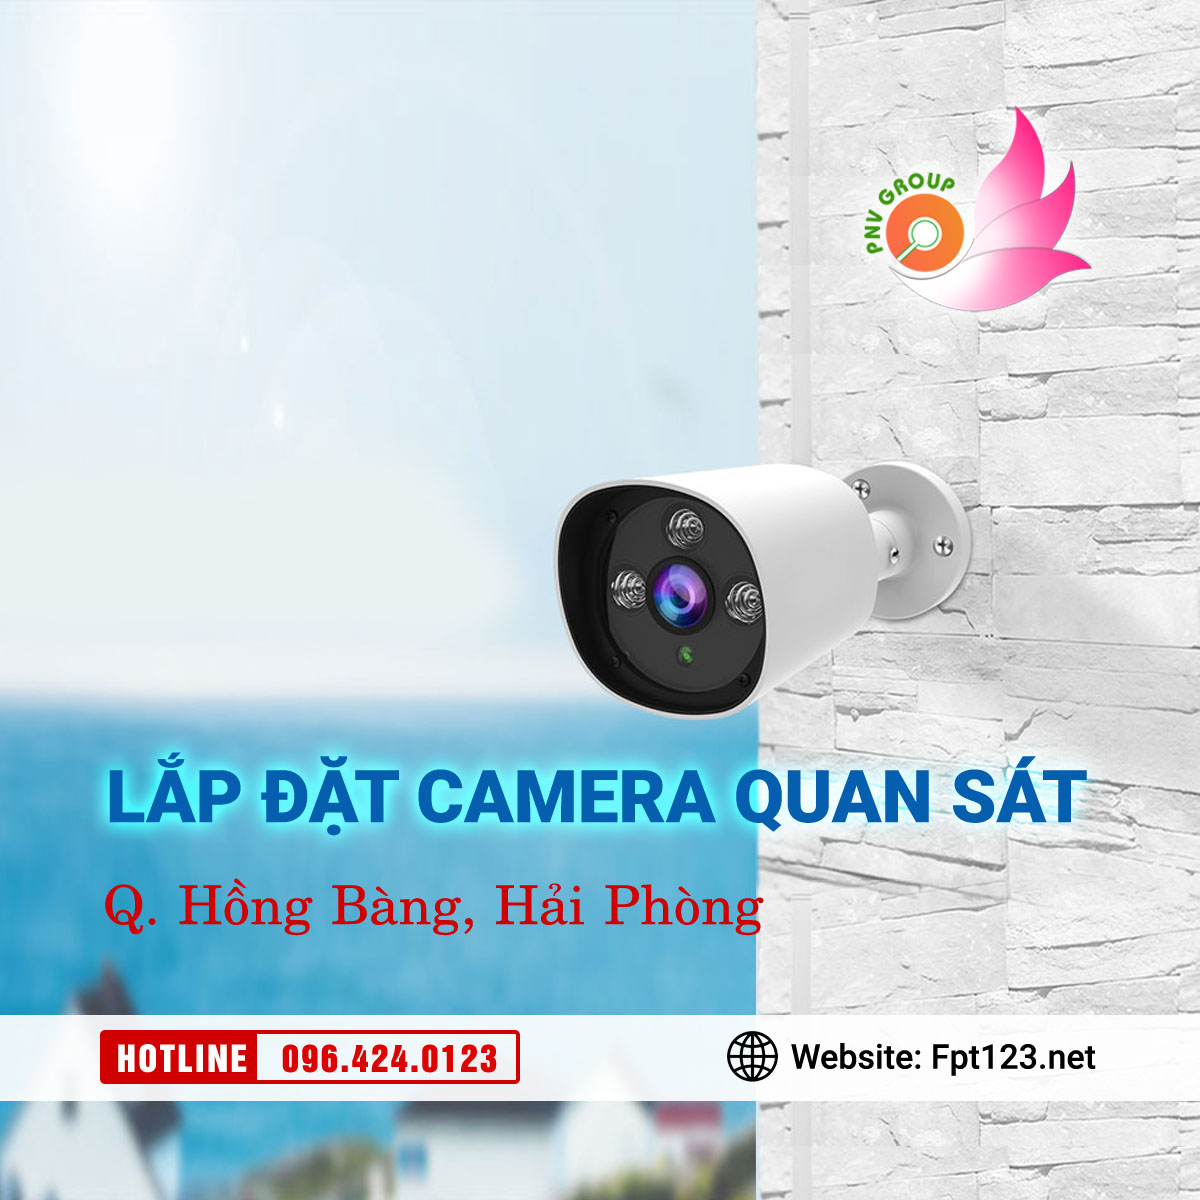 Lắp đặt camera quan sát ở quận Hồng Bàng, Hải Phòng